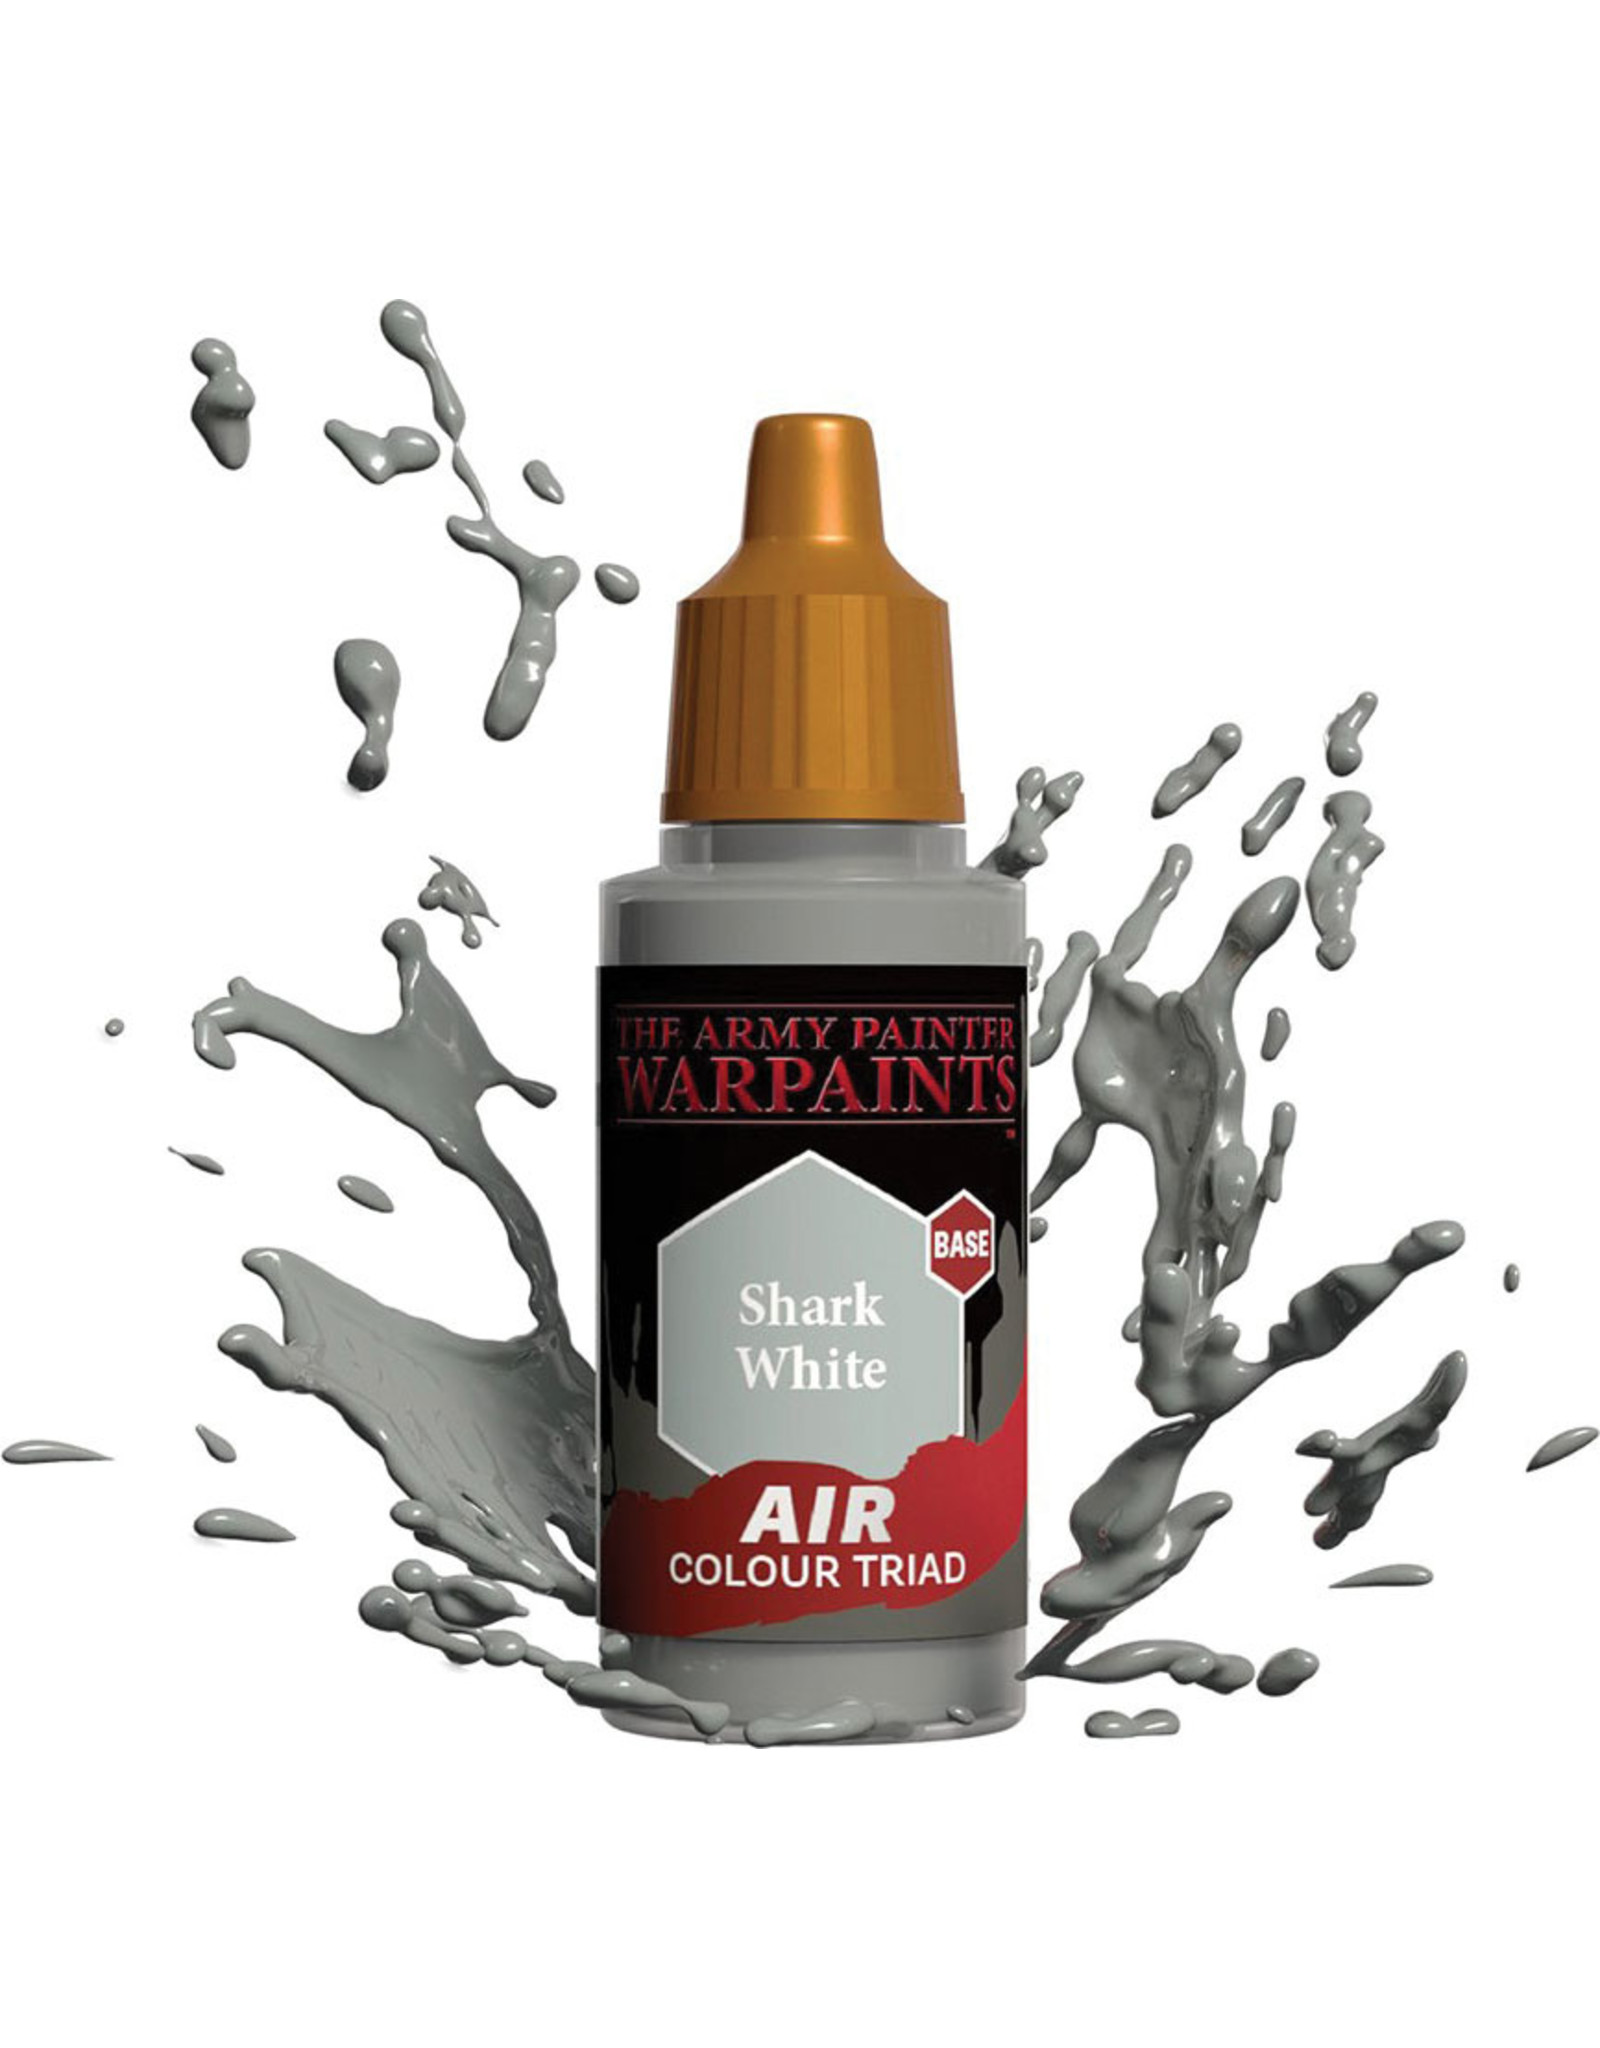 Army Painter Warpaint Air: Shark White, 18ml.